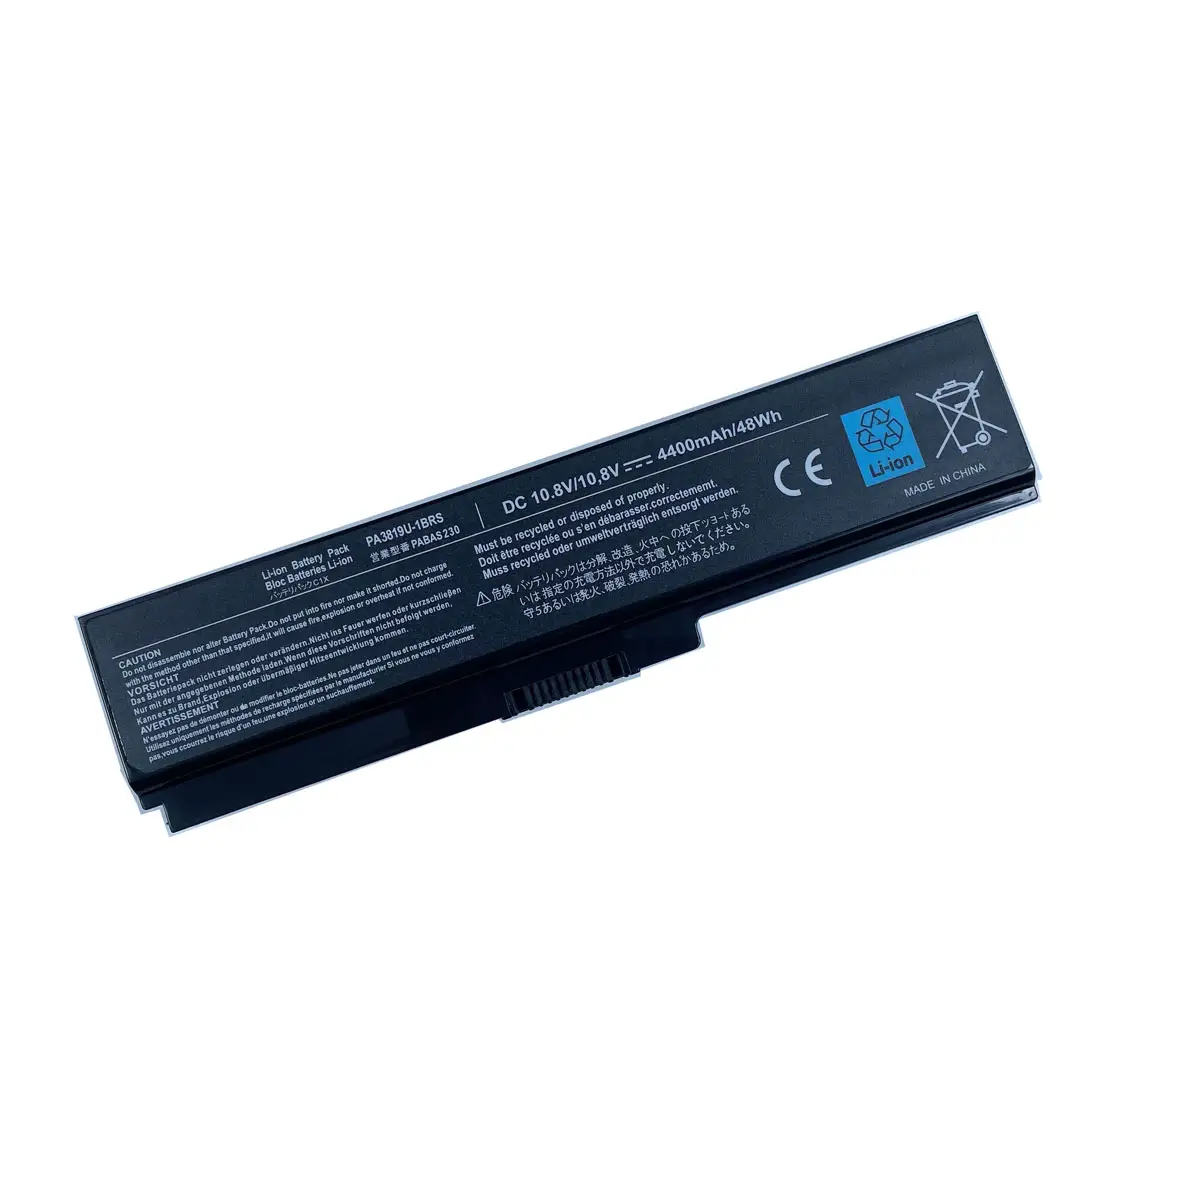 Batterie d'ordinateur portable PA3817U-1BRS pour Toshiba Satellite L745 L755 A660 C640 C650 C655 C660 L510 L630 L640 L650 U400 L645 L655